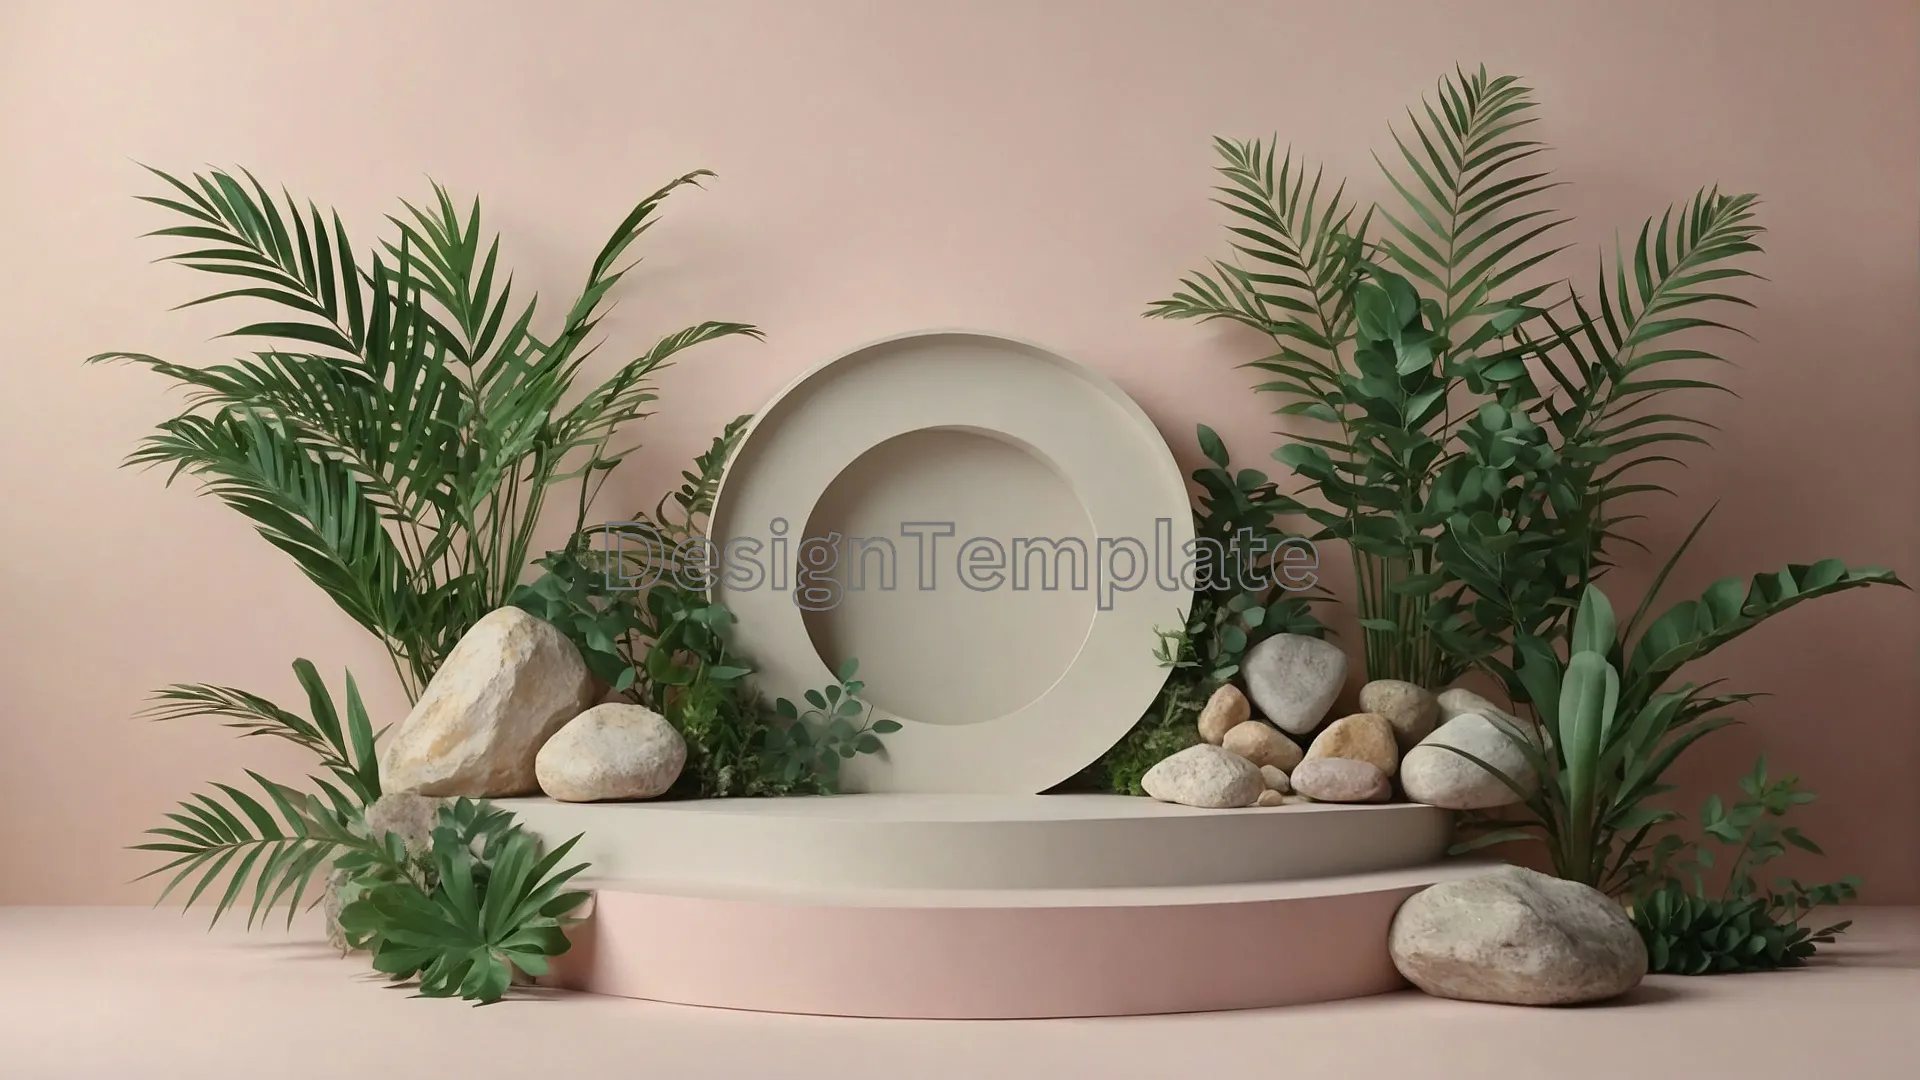 Elegant Minimalist Plant Frame Texture Background Photo image